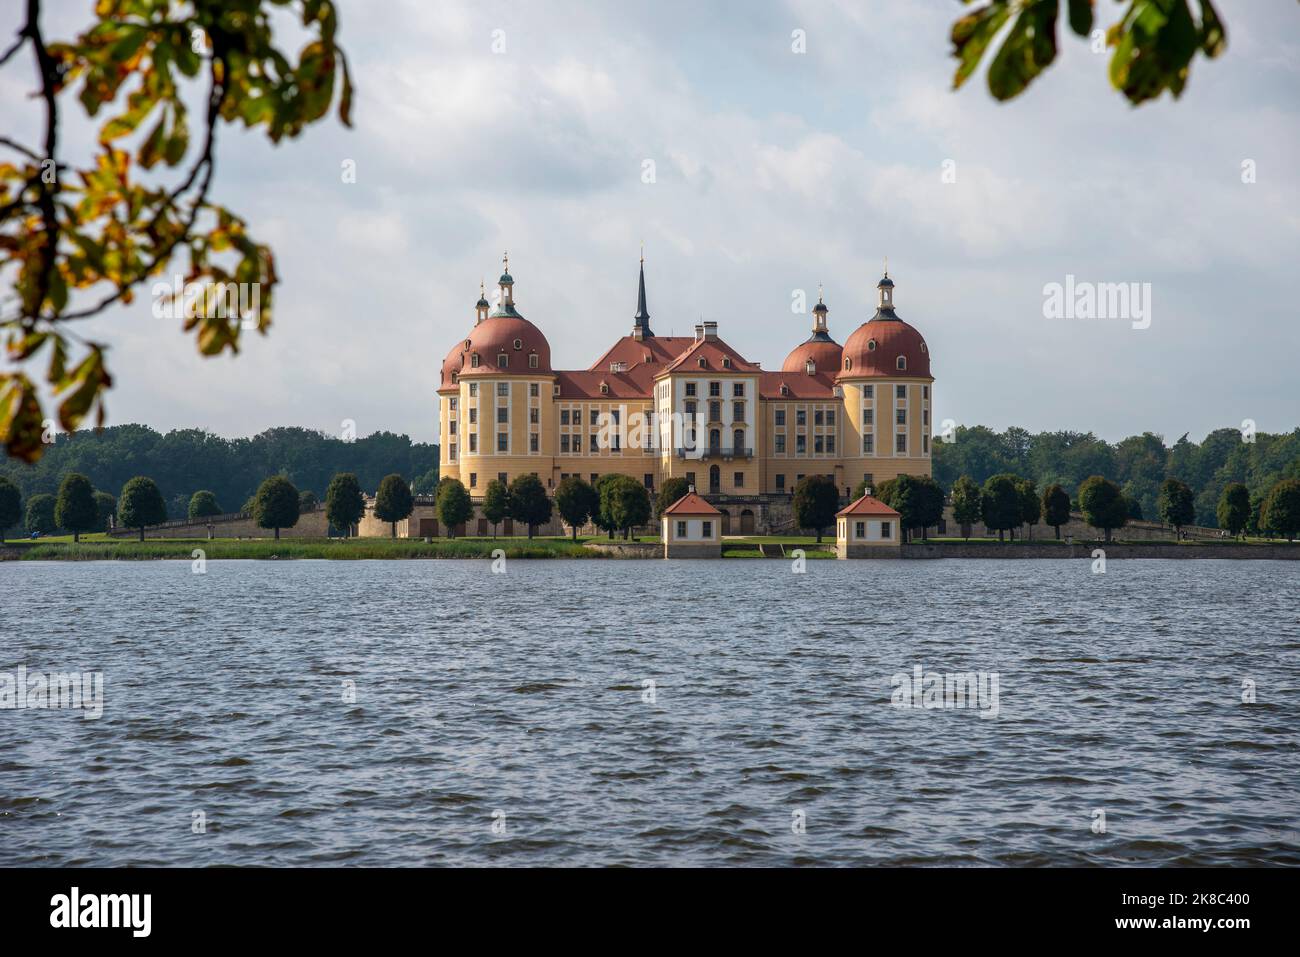 Majestätisches Schloss moritzburg sachsen deutschland Stockfoto